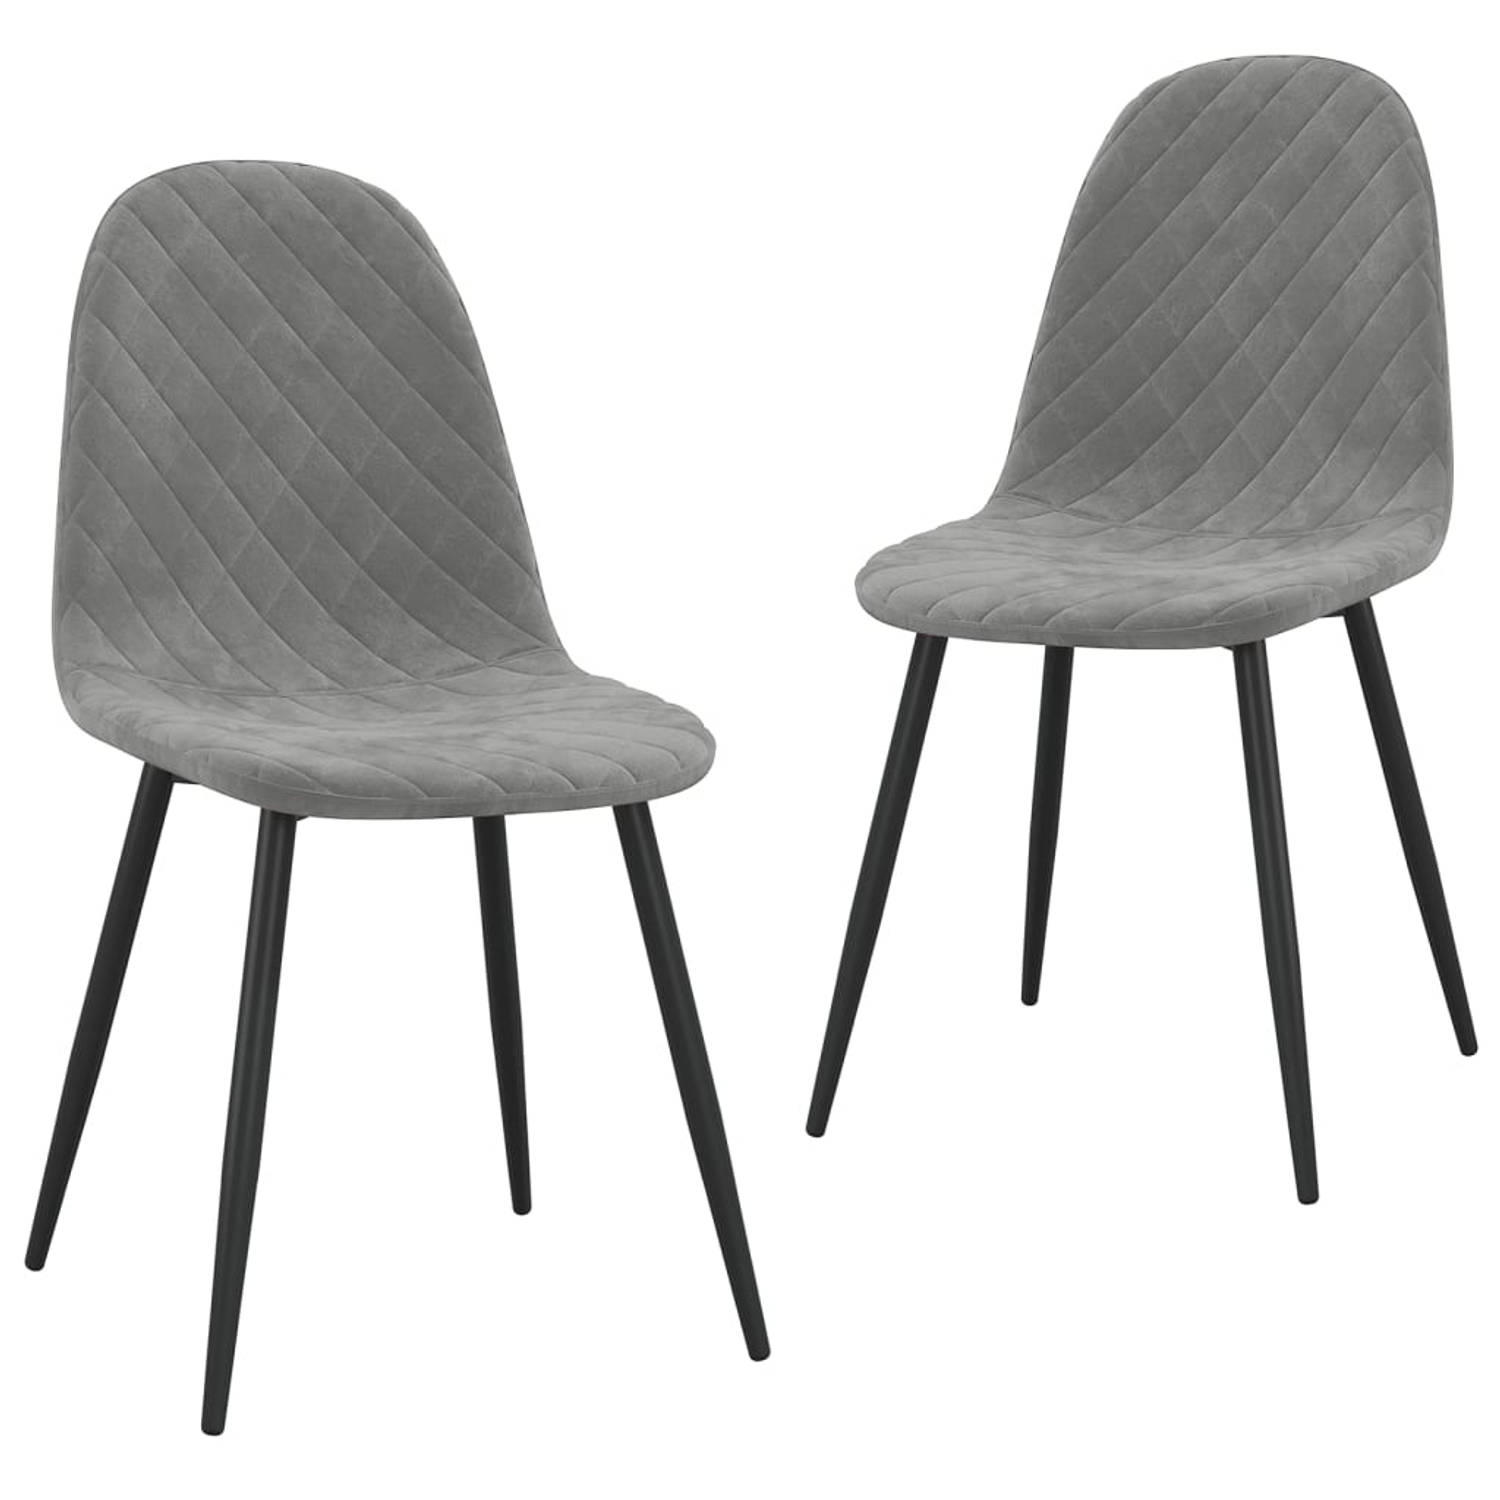 The Living Store Eetstoelen - Minimalistisch en elegant - Dikke - zacht aanvoelende bekleding - Gepoedercoat metalen poten - Lichtgrijs - 45 x 53.5 x 87 cm (B x D x H) - 2 x stoel